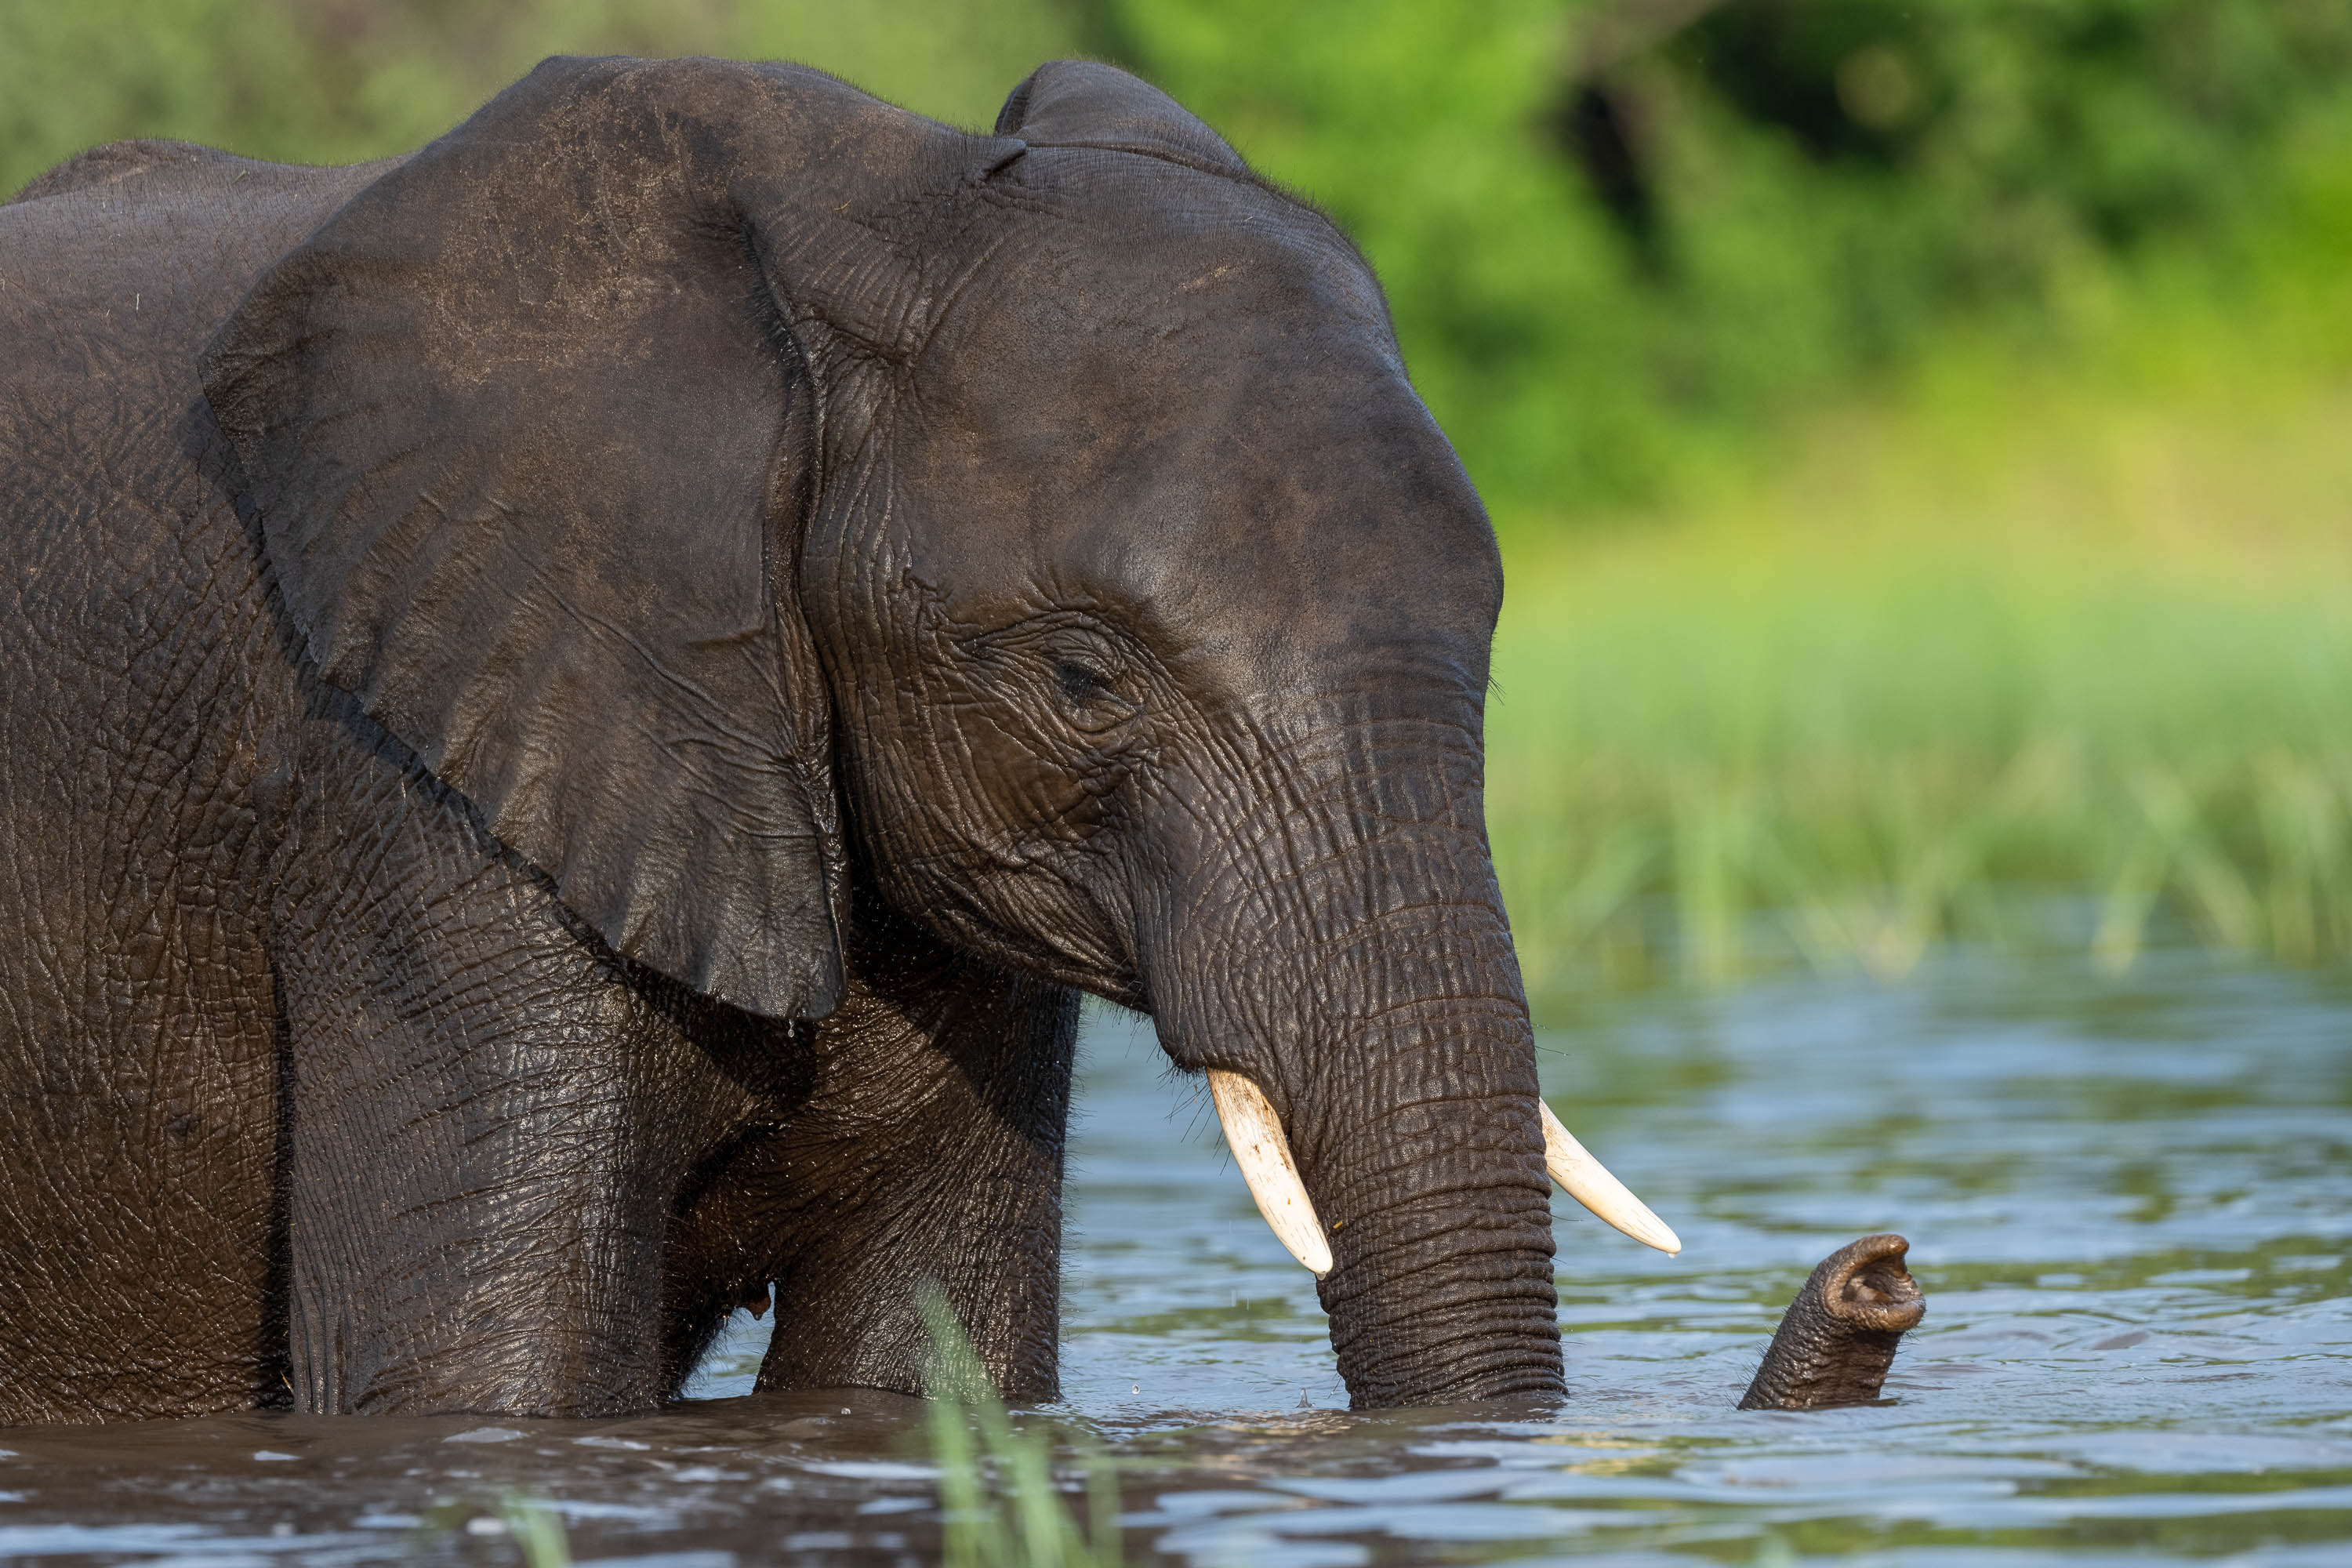 Elephant bathing, Chobe River, Botswana